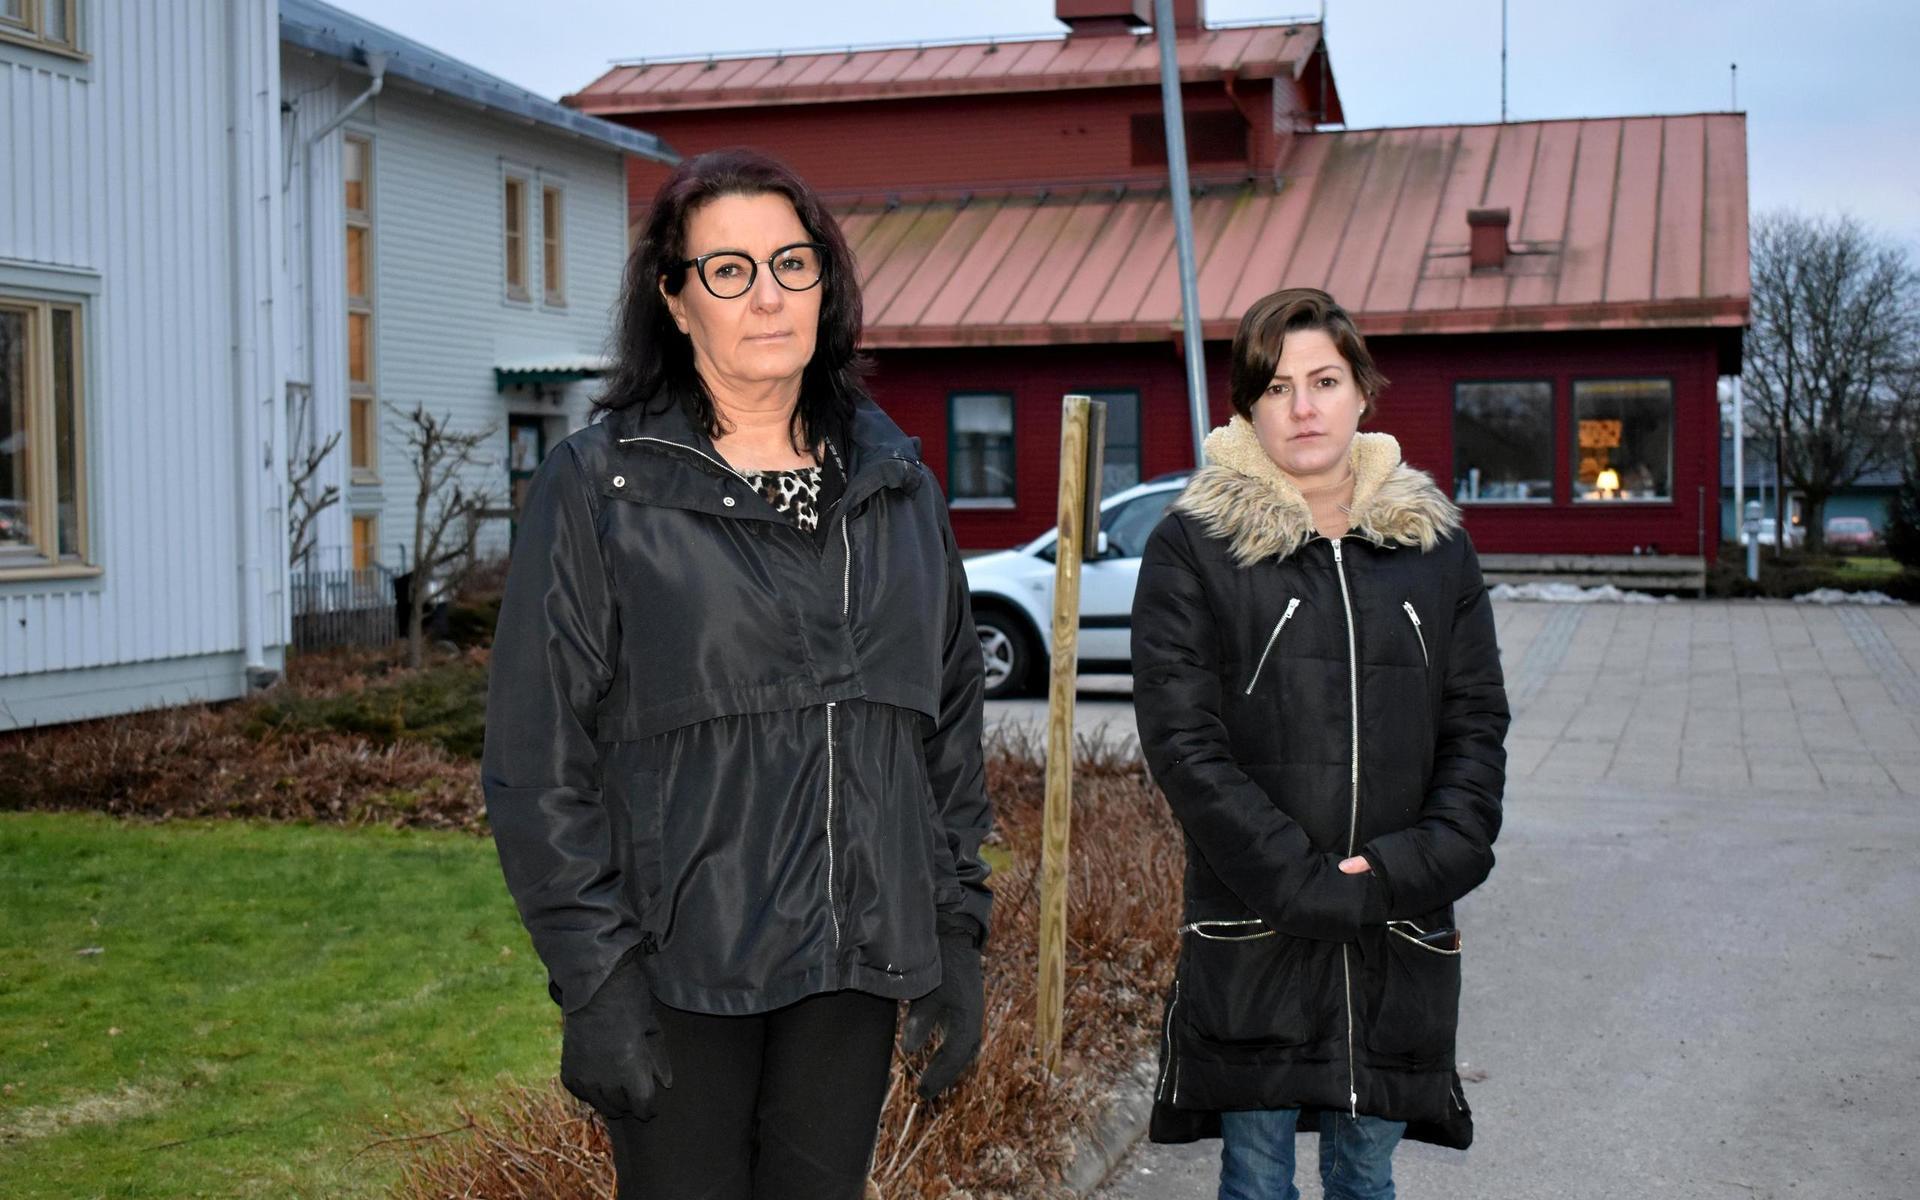 Lissi Hansen och Emelie Brüel är två av åtta medarbetare som ingår i natteamet på Sjölunda äldreboende i Torup. De är oroliga för att arbetsgivaren Hylte kommun kommer att slopa den så kallade tvättstugemodellen som har inneburit en stor möjlighet att påverka sitt eget schema.